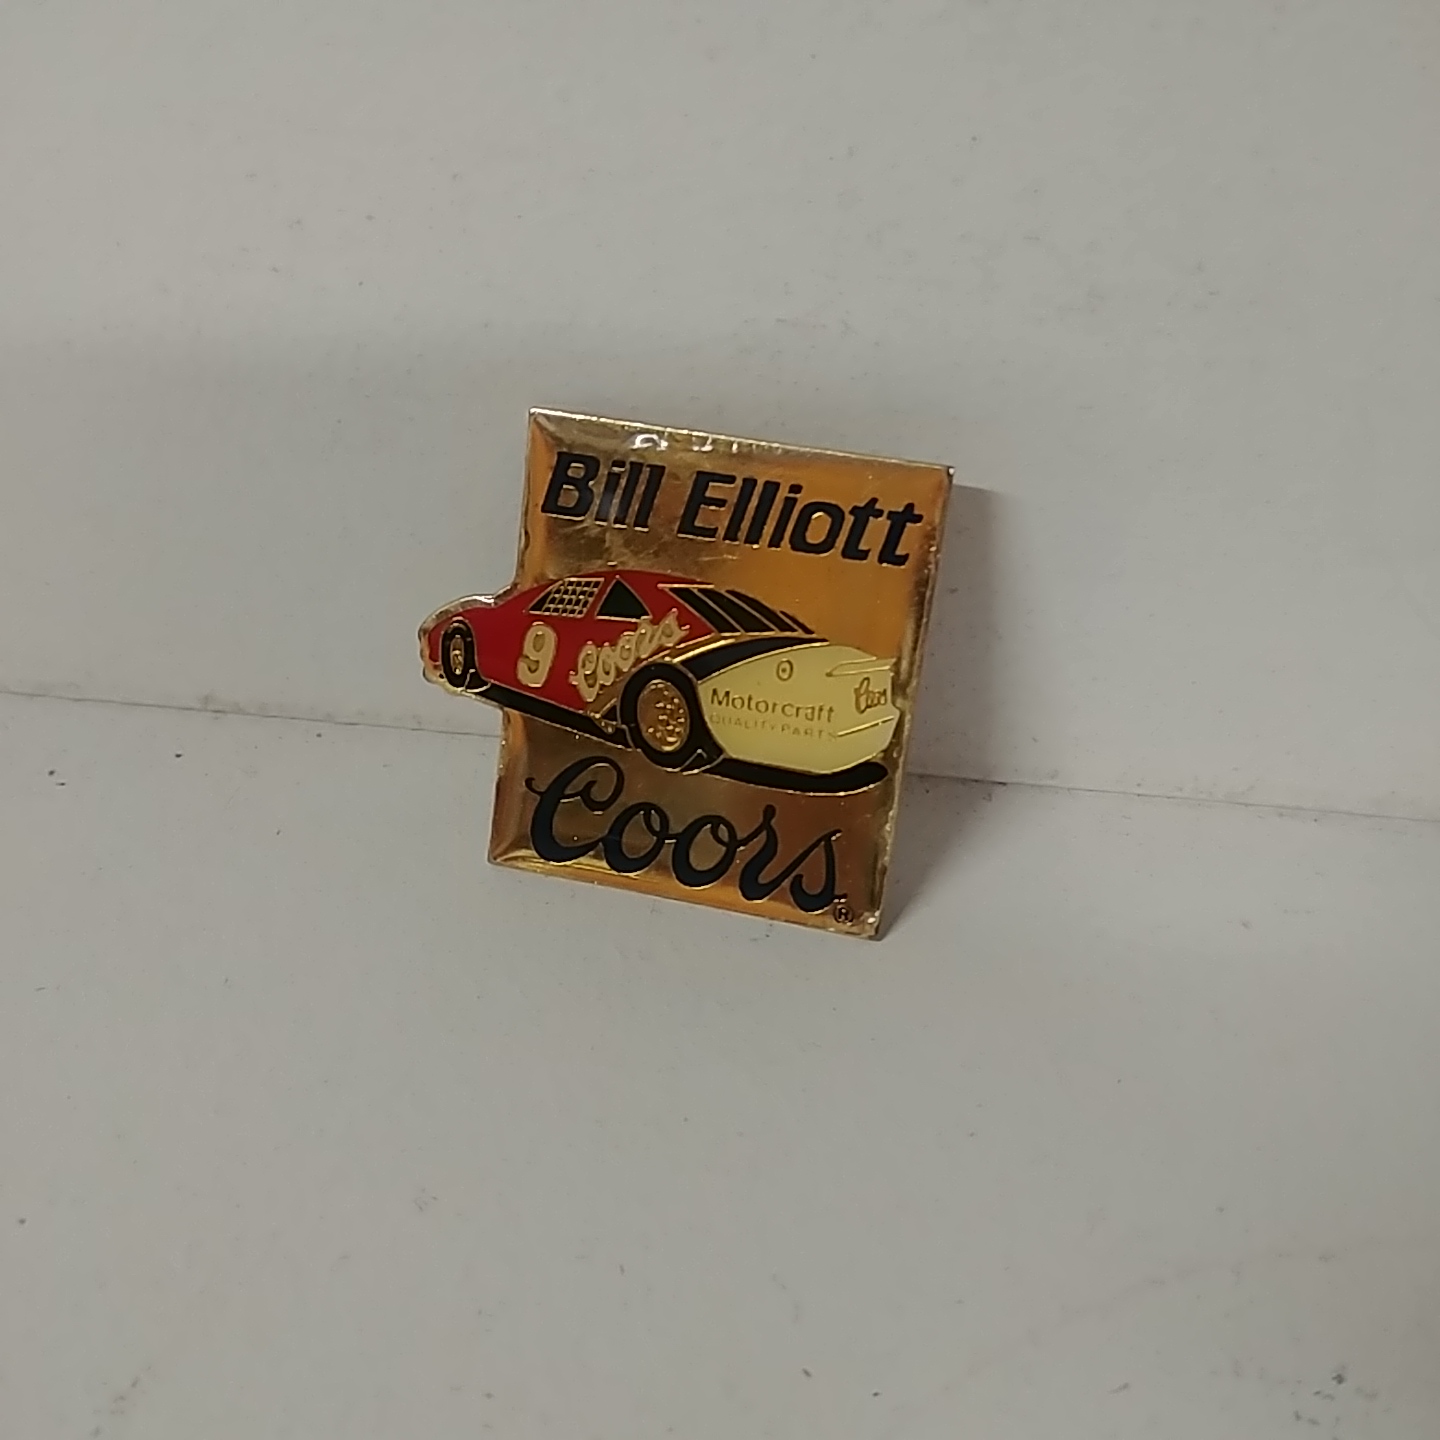 1988 Bill Elliott Coors Motorcraft hatpin